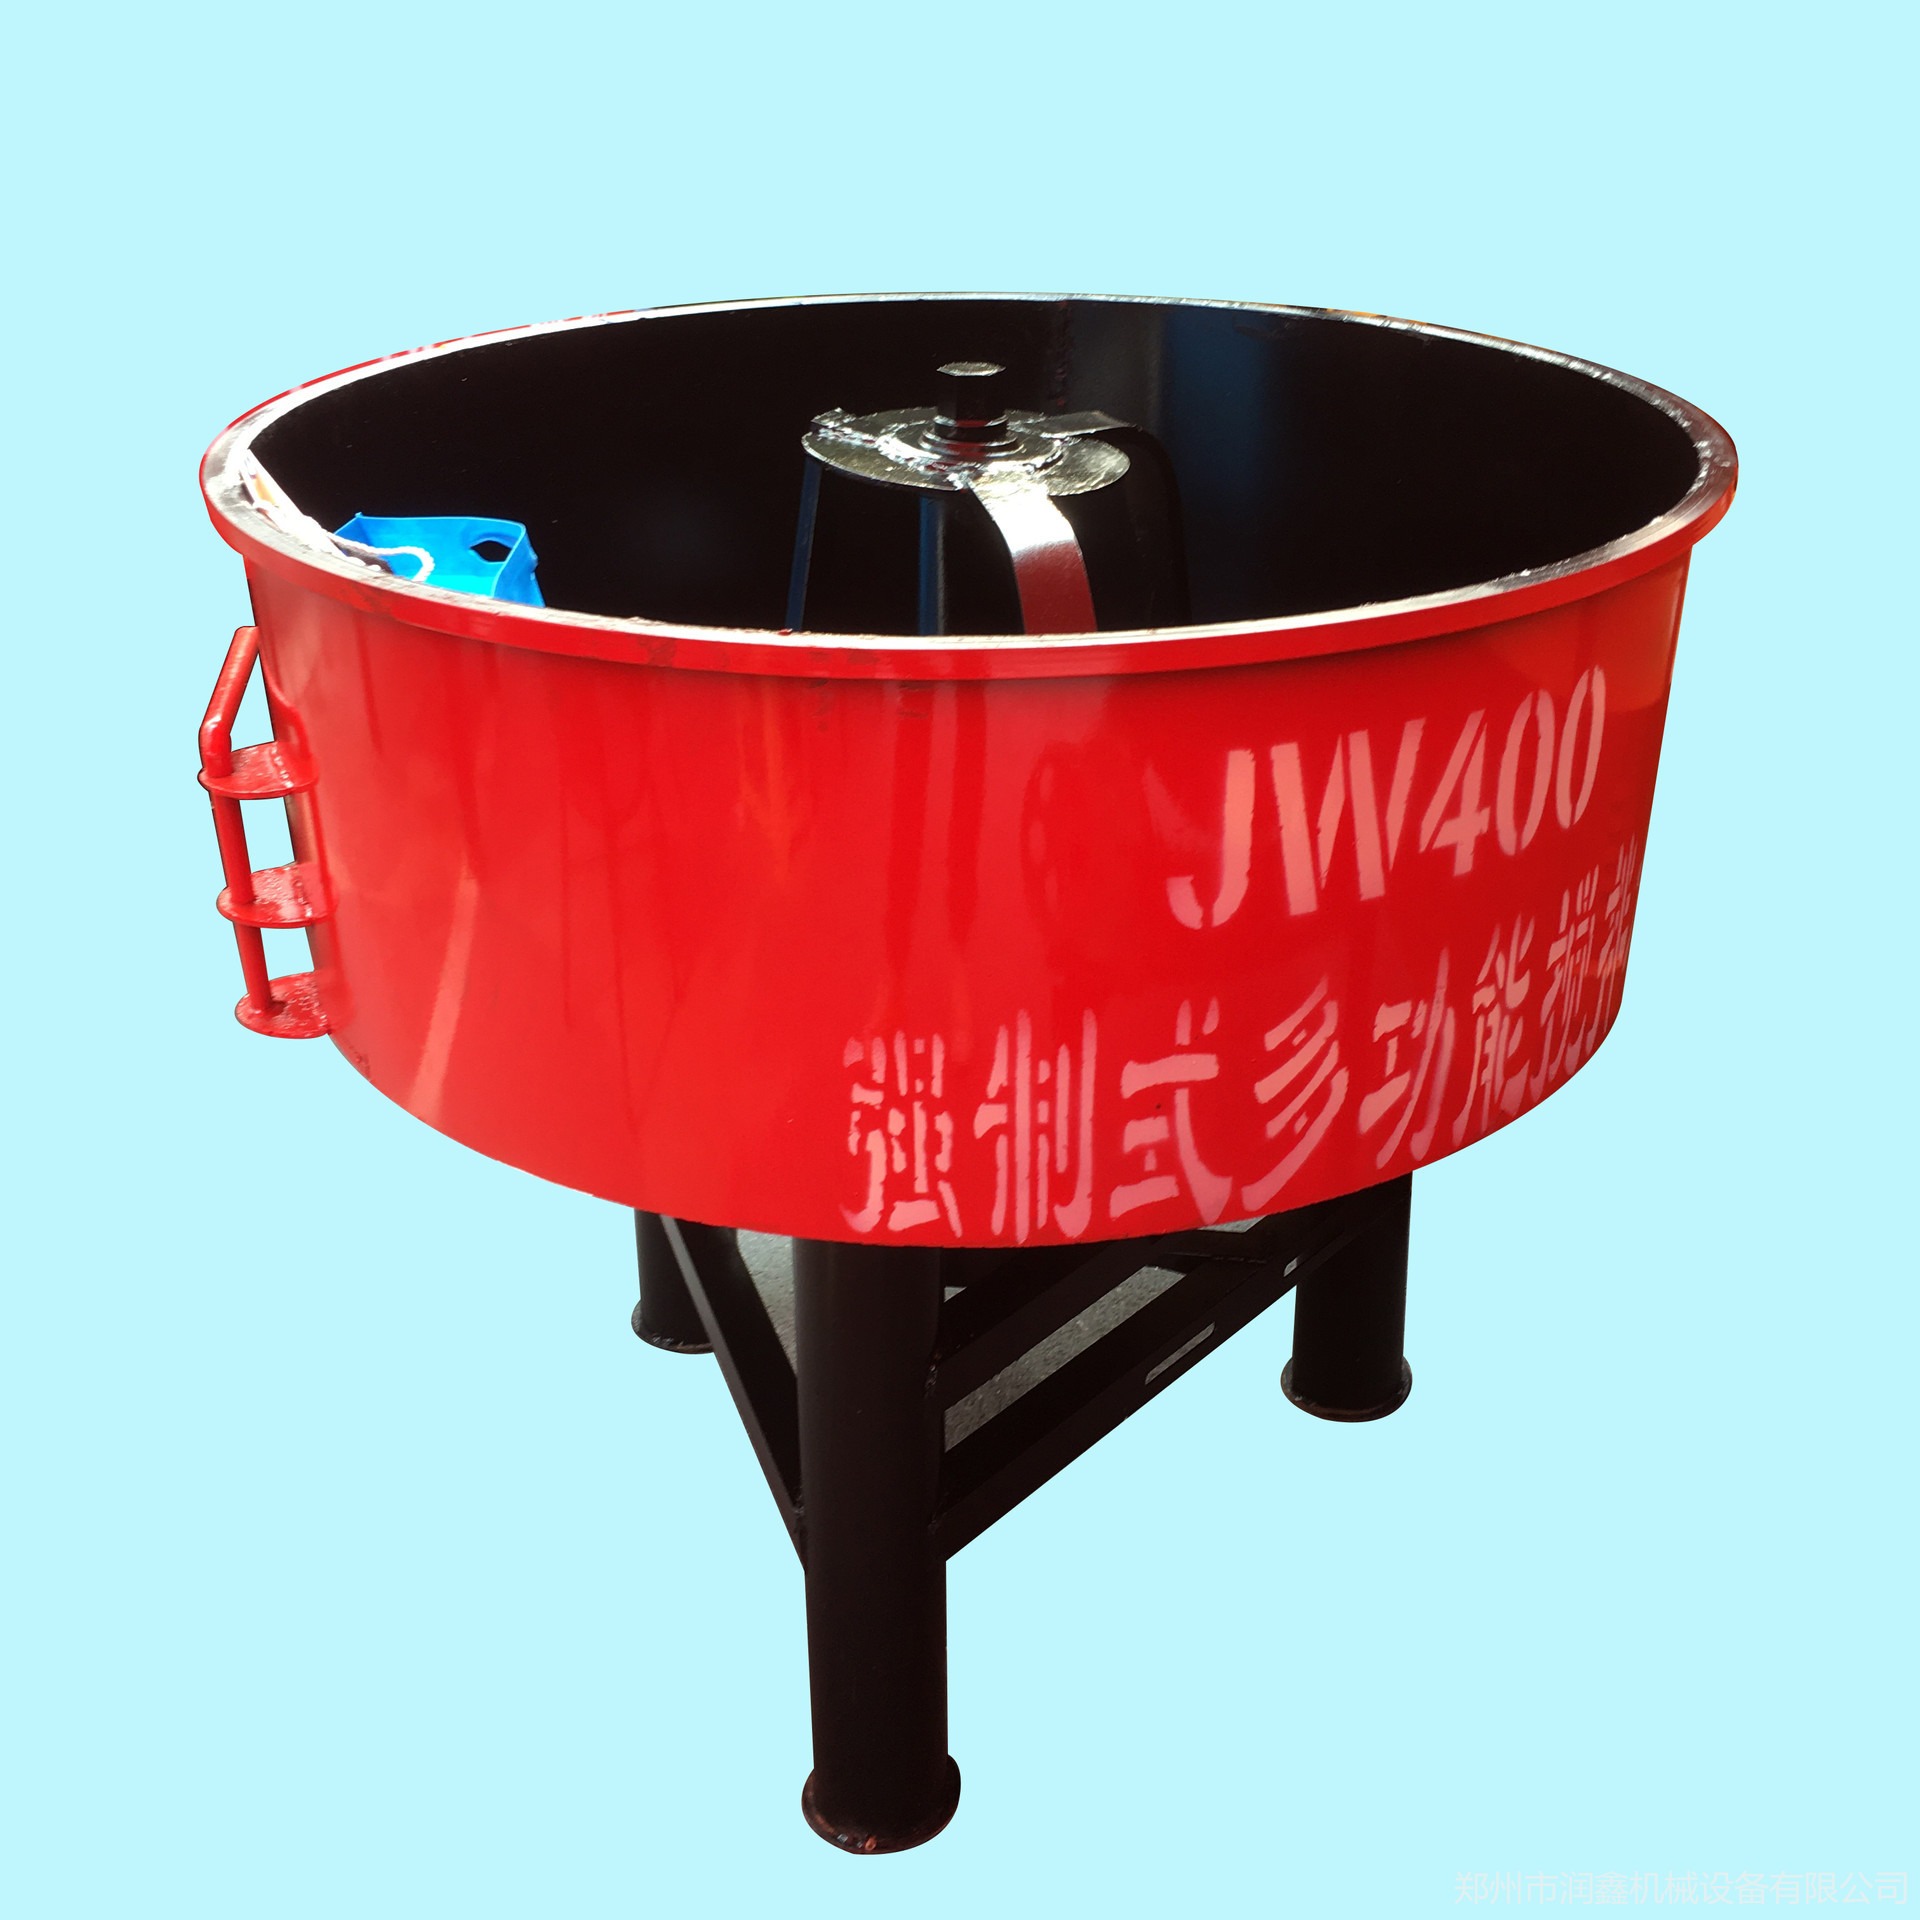 混凝土平口搅拌机 润鑫 JW400型搅拌机 立式平口多功能混合搅拌机 平口搅拌机价格图片